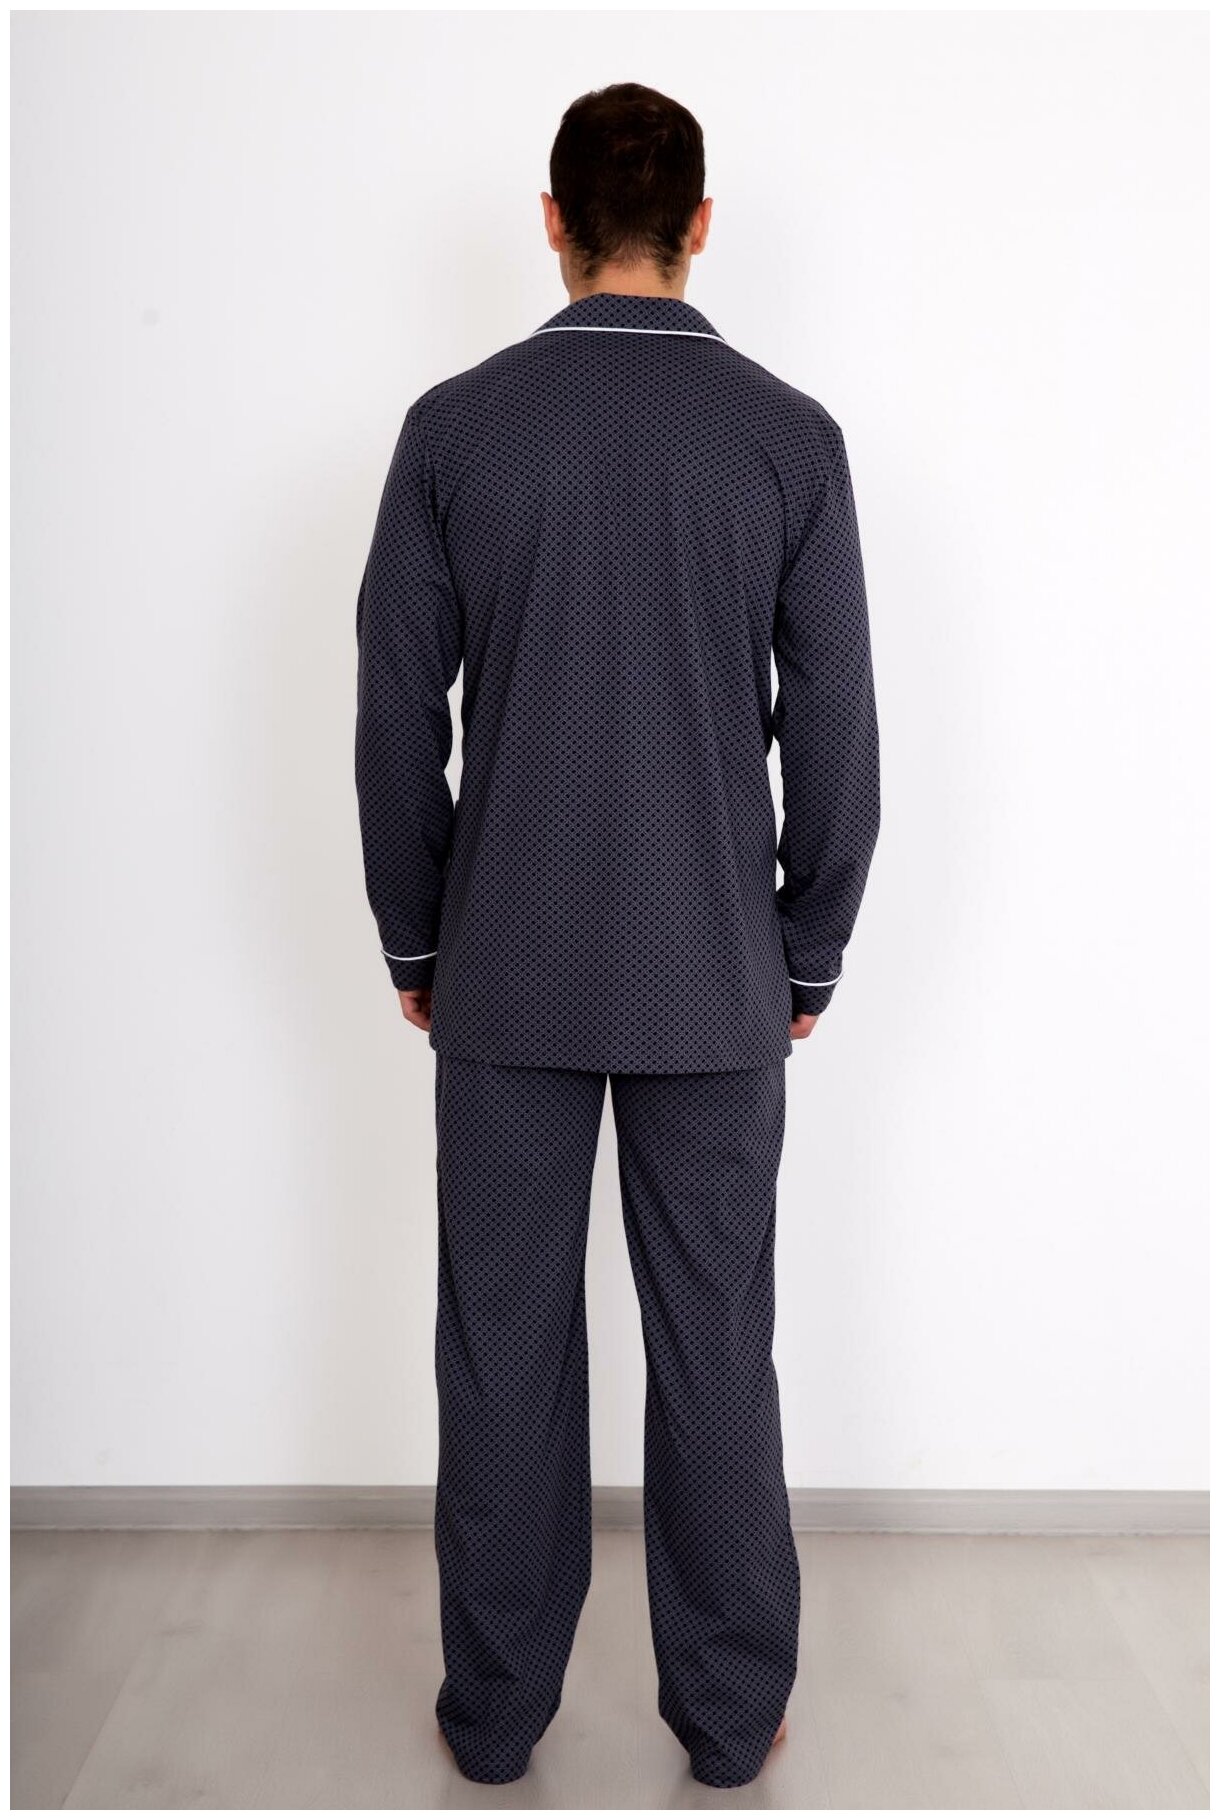 Мужская пижама Комфорт Серый размер 56 Кулирка Лика Дресс рубашка на пуговицах с карманами прямые свободные брюки на поясной резинке - фотография № 4